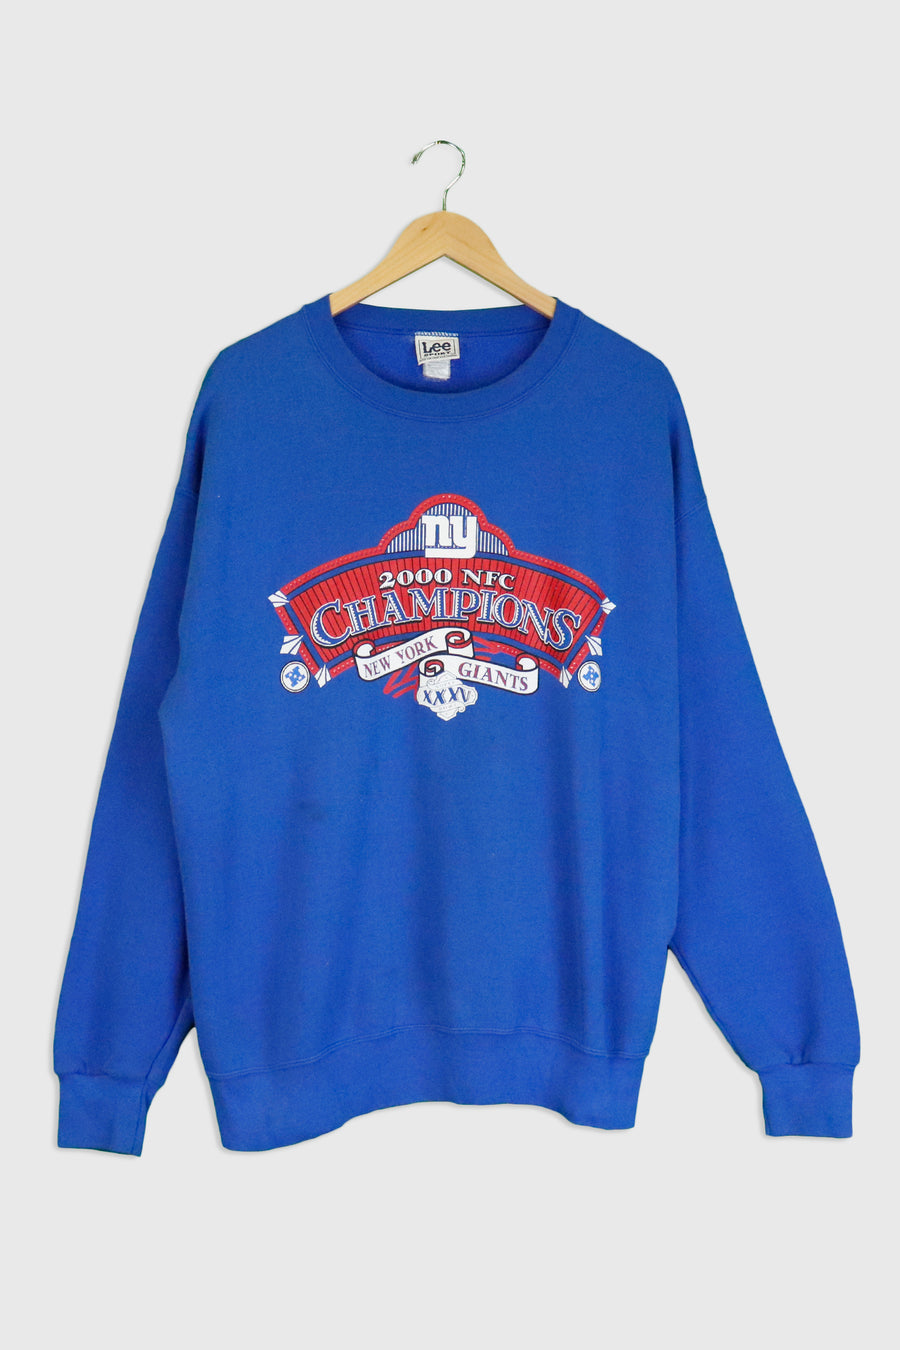 Vintage 2000 NFC NY Giants Champions Vinyl Sweatshirt Sz XL